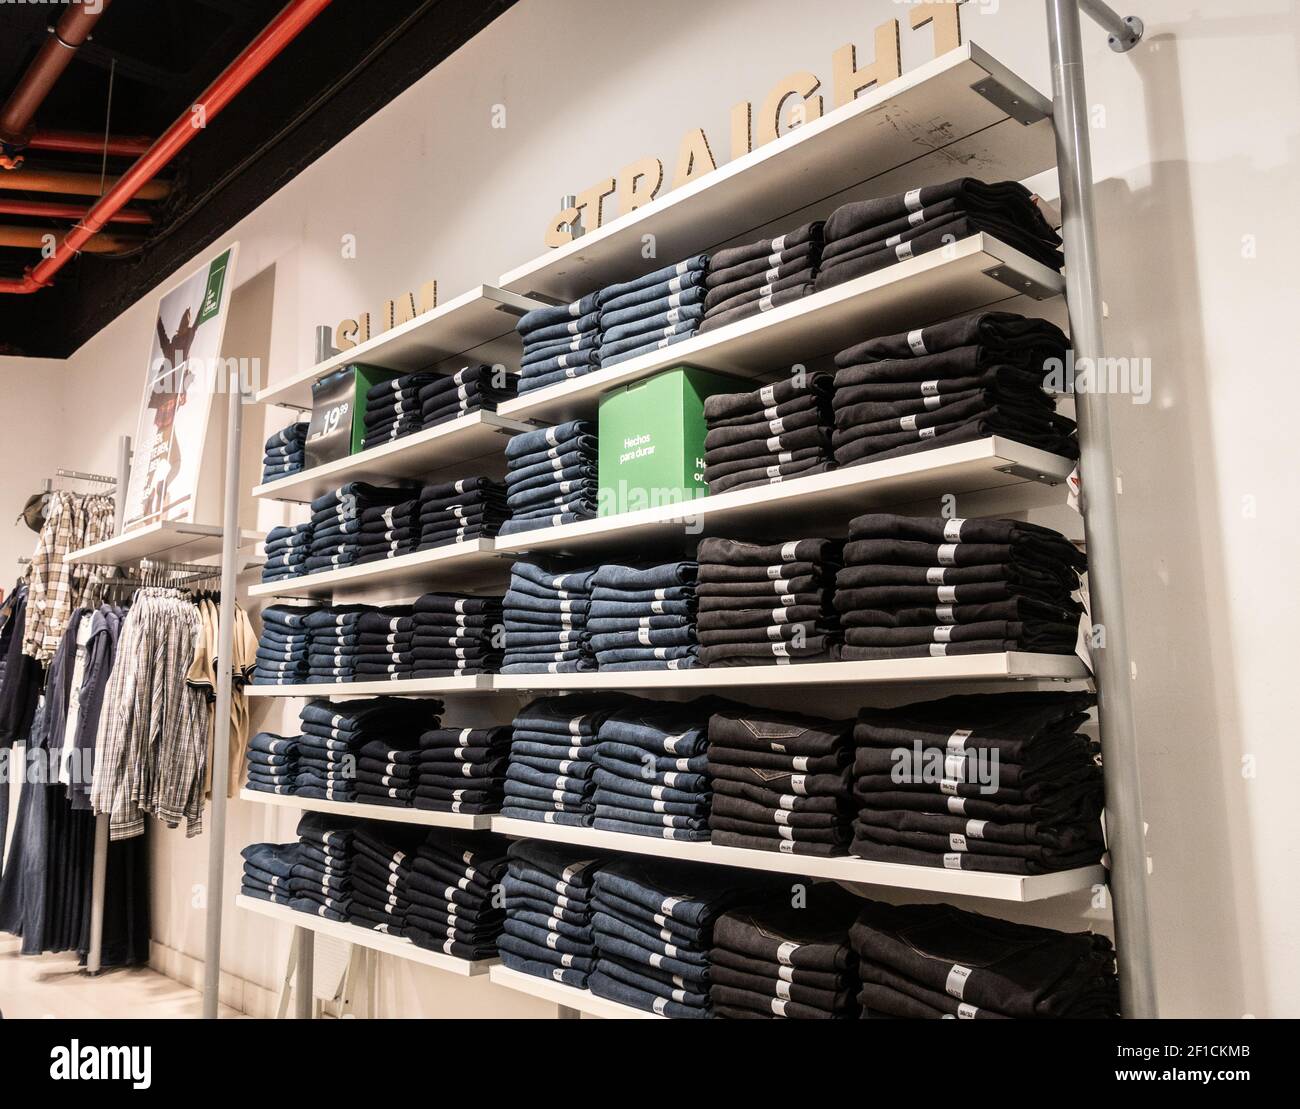 Les jeans en denim sont exposés dans un magasin de vêtements Photo Stock -  Alamy